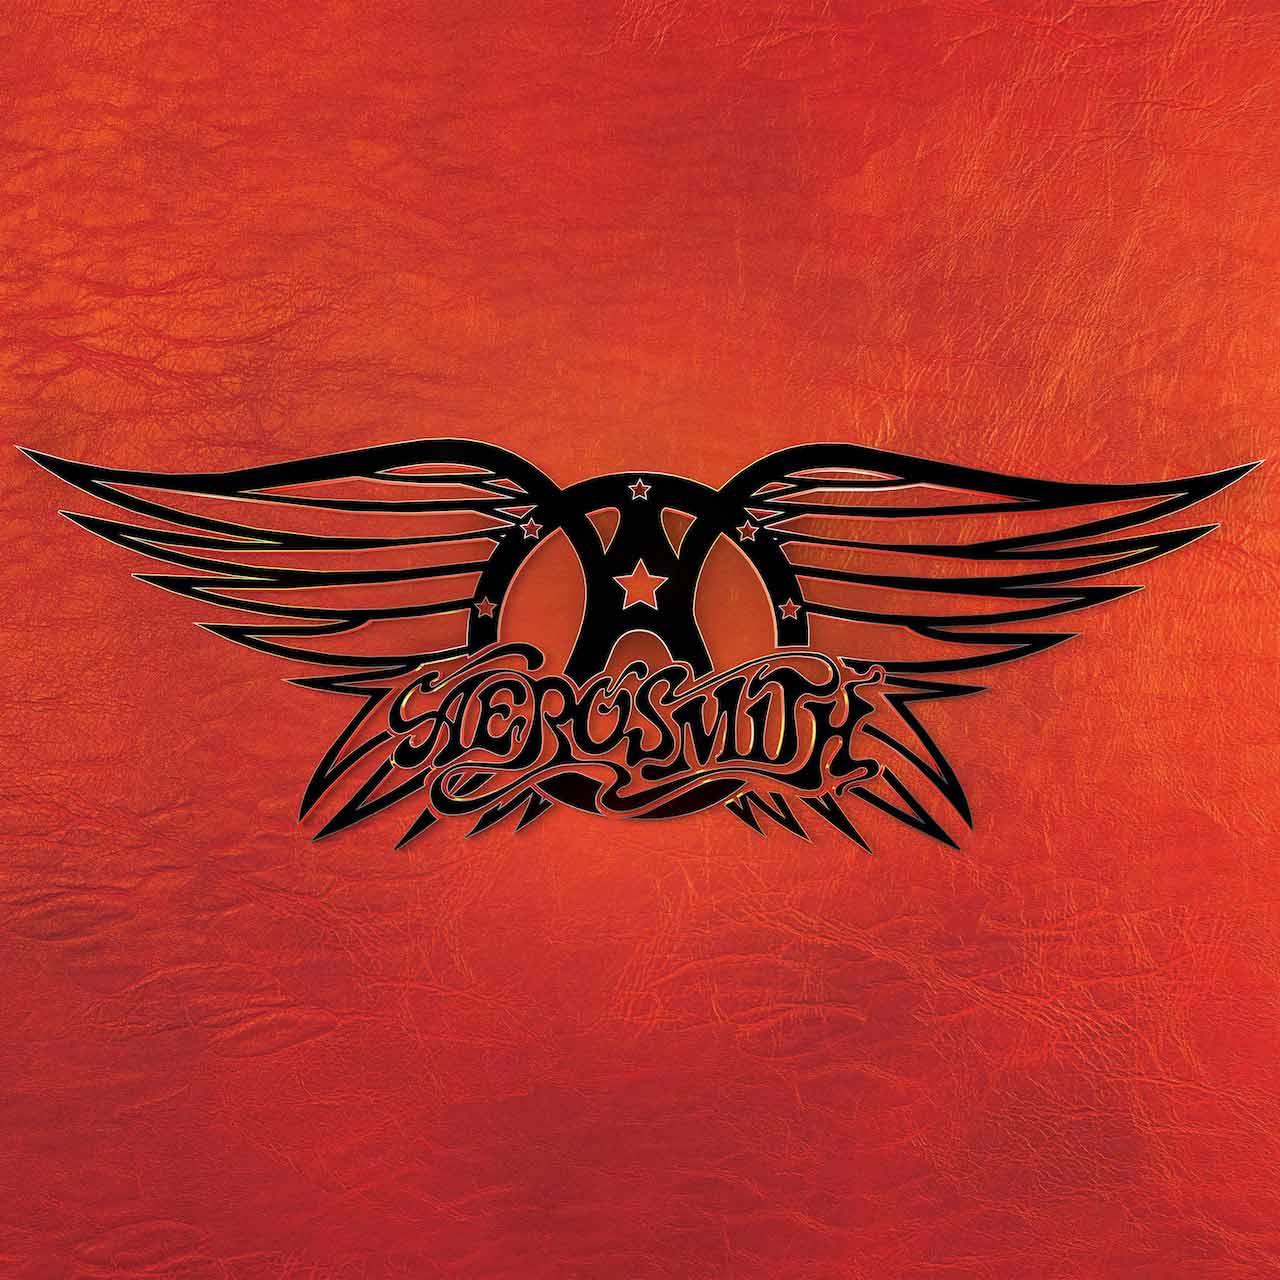 ‘Greatest Hits’: la colección definitiva de Aerosmith saldrá en agosto